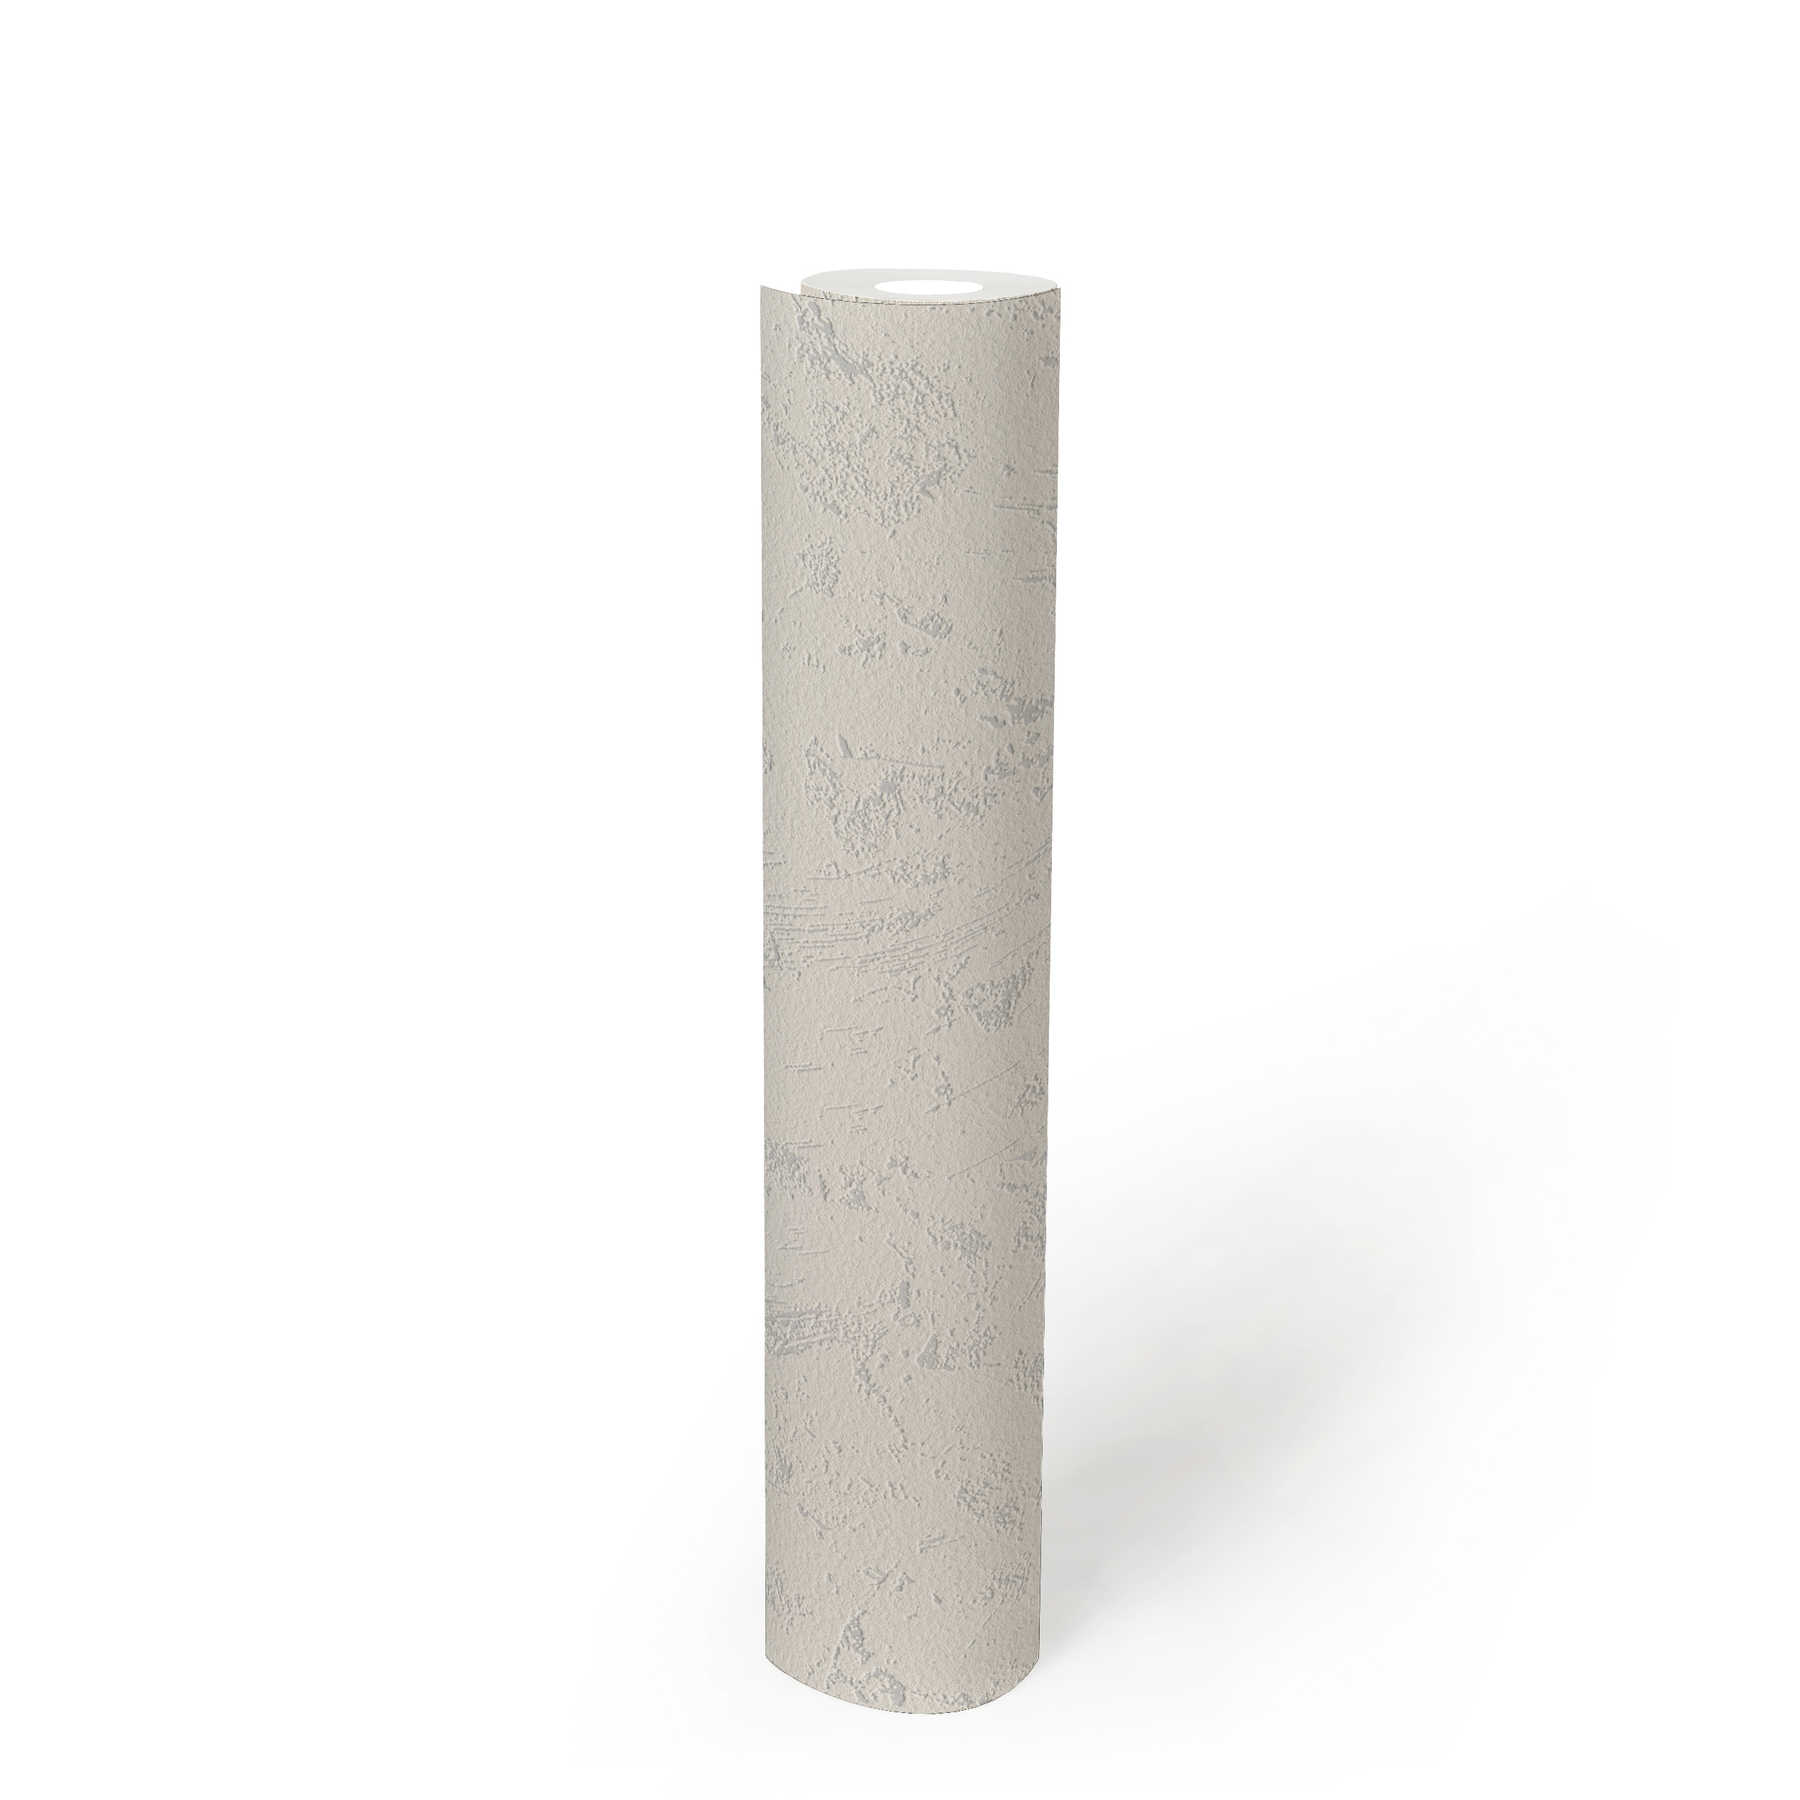             Papel pintado de aspecto de yeso con estructura de espuma
        